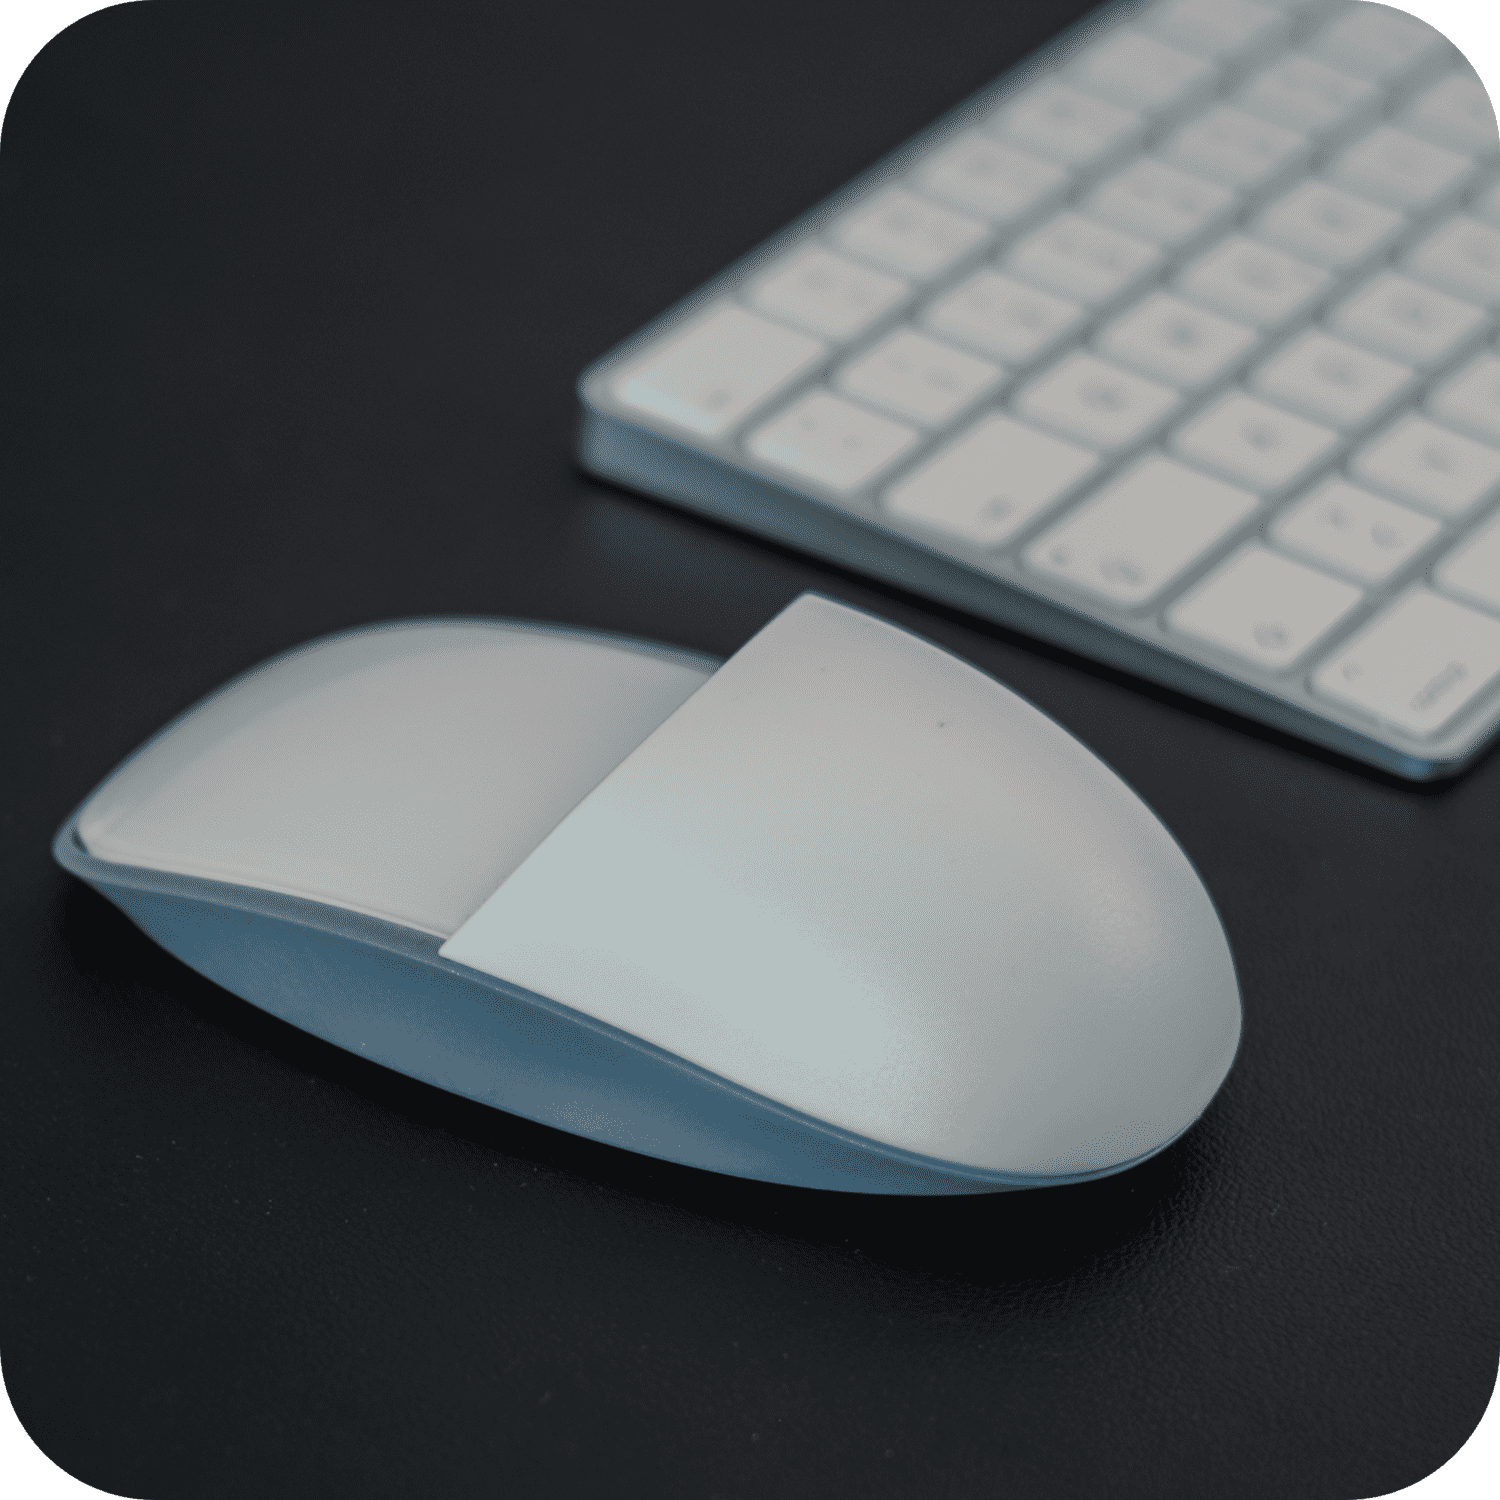 Solumics.Case - L'aggiornamento ergonomico per il tuo Mouse iMac.